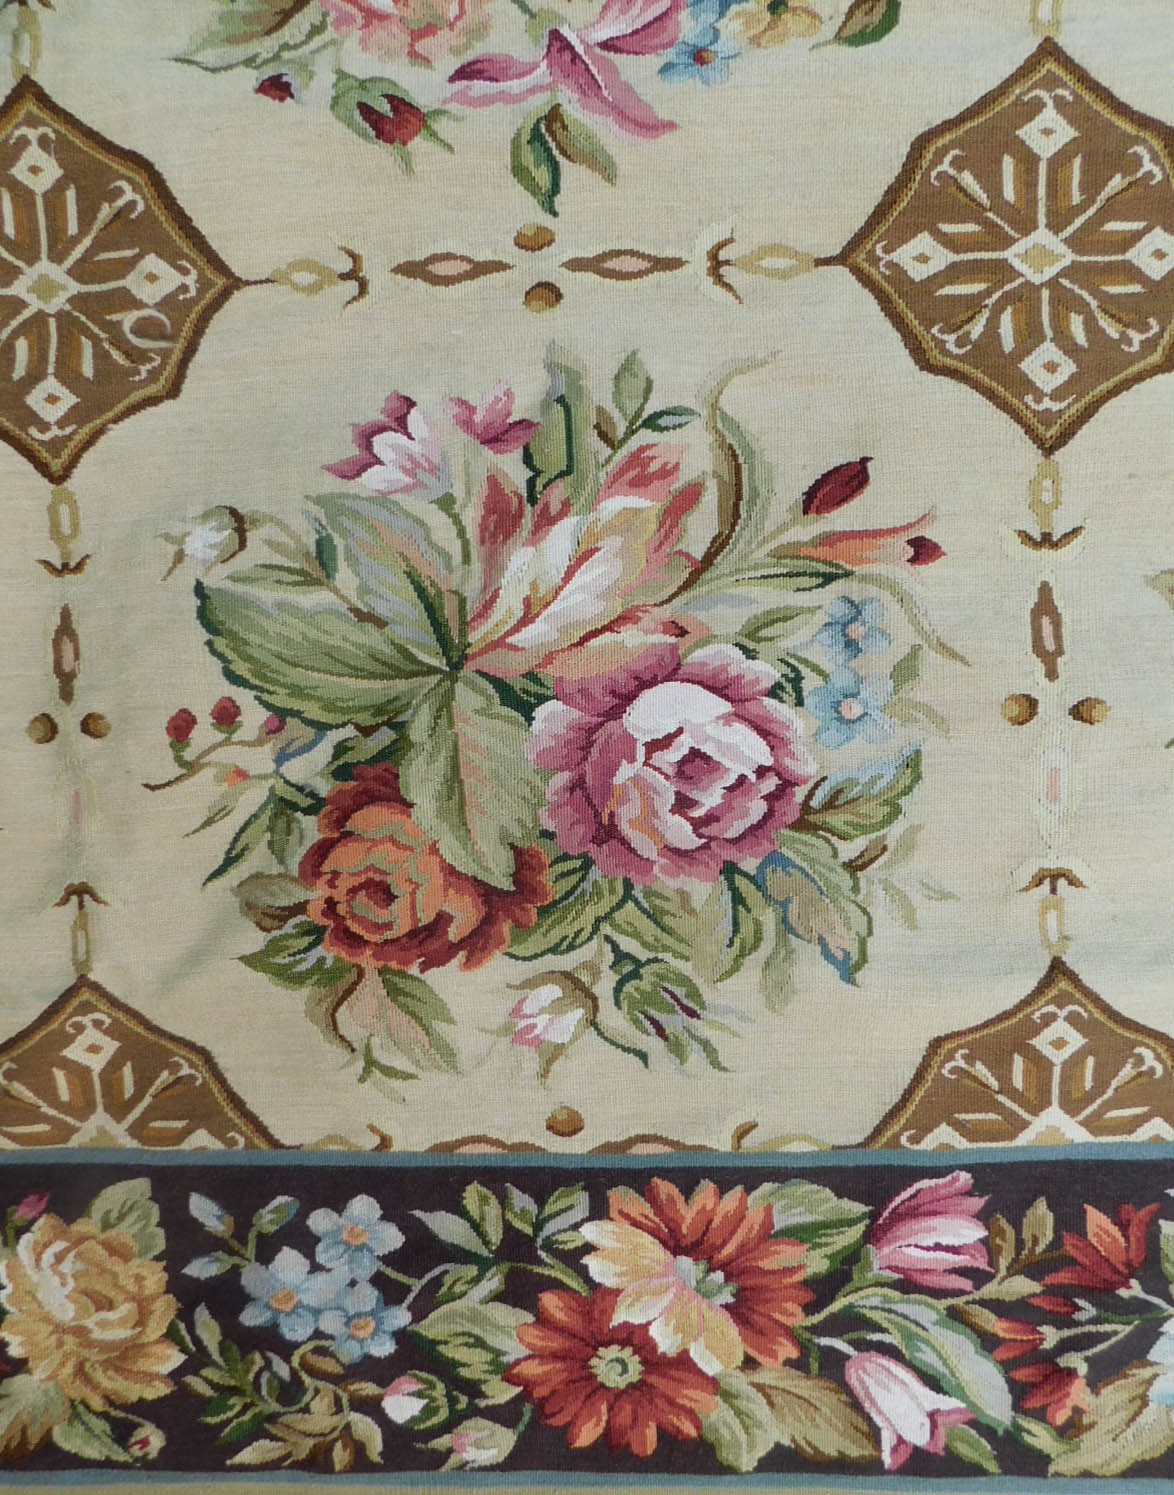 Teppich in Aubusson Technik und Louis XVI Stil. - Image 4 of 6